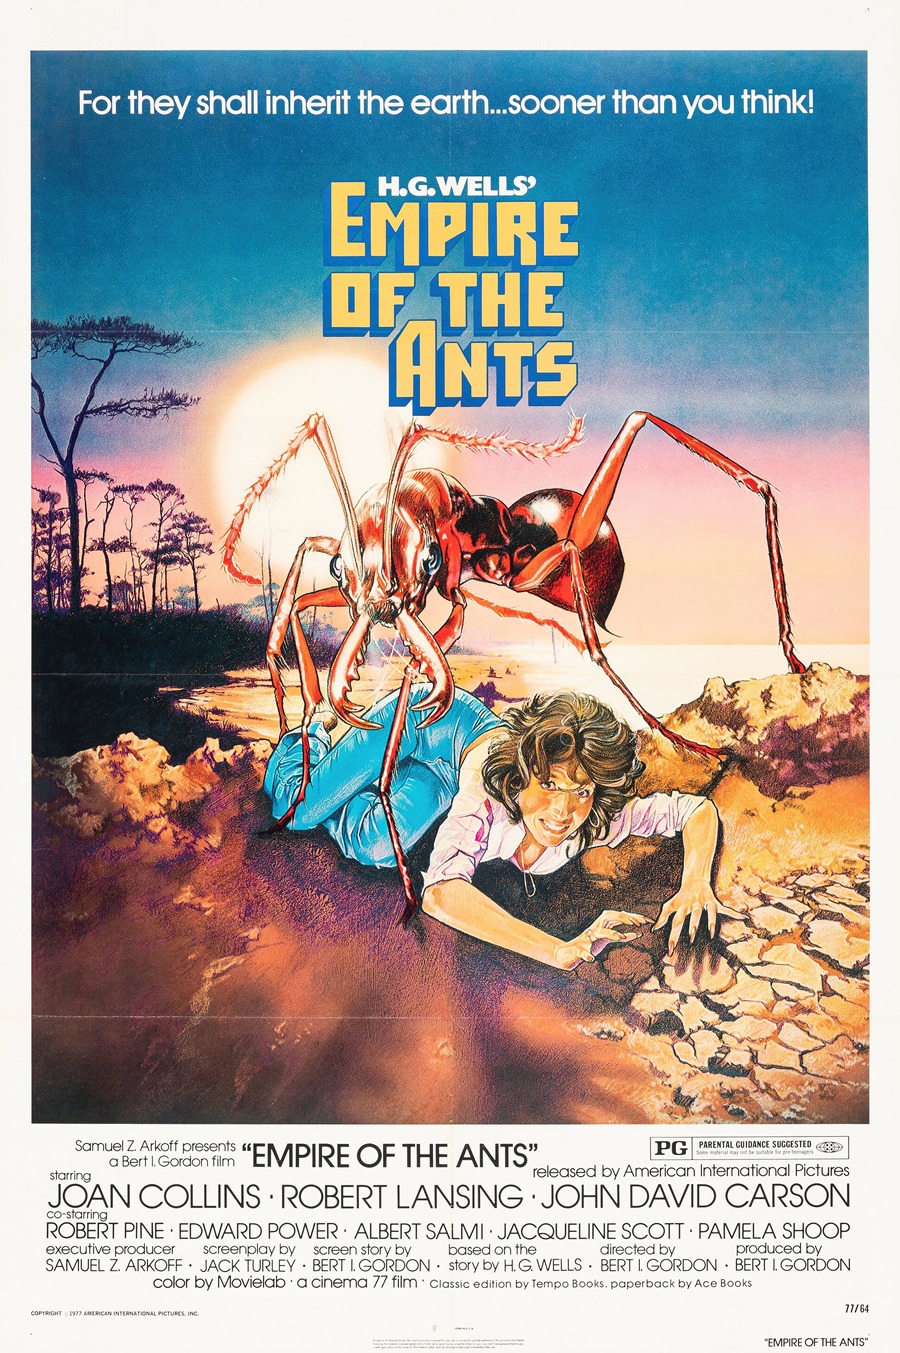 Drew Struzan - Empire of the Ants